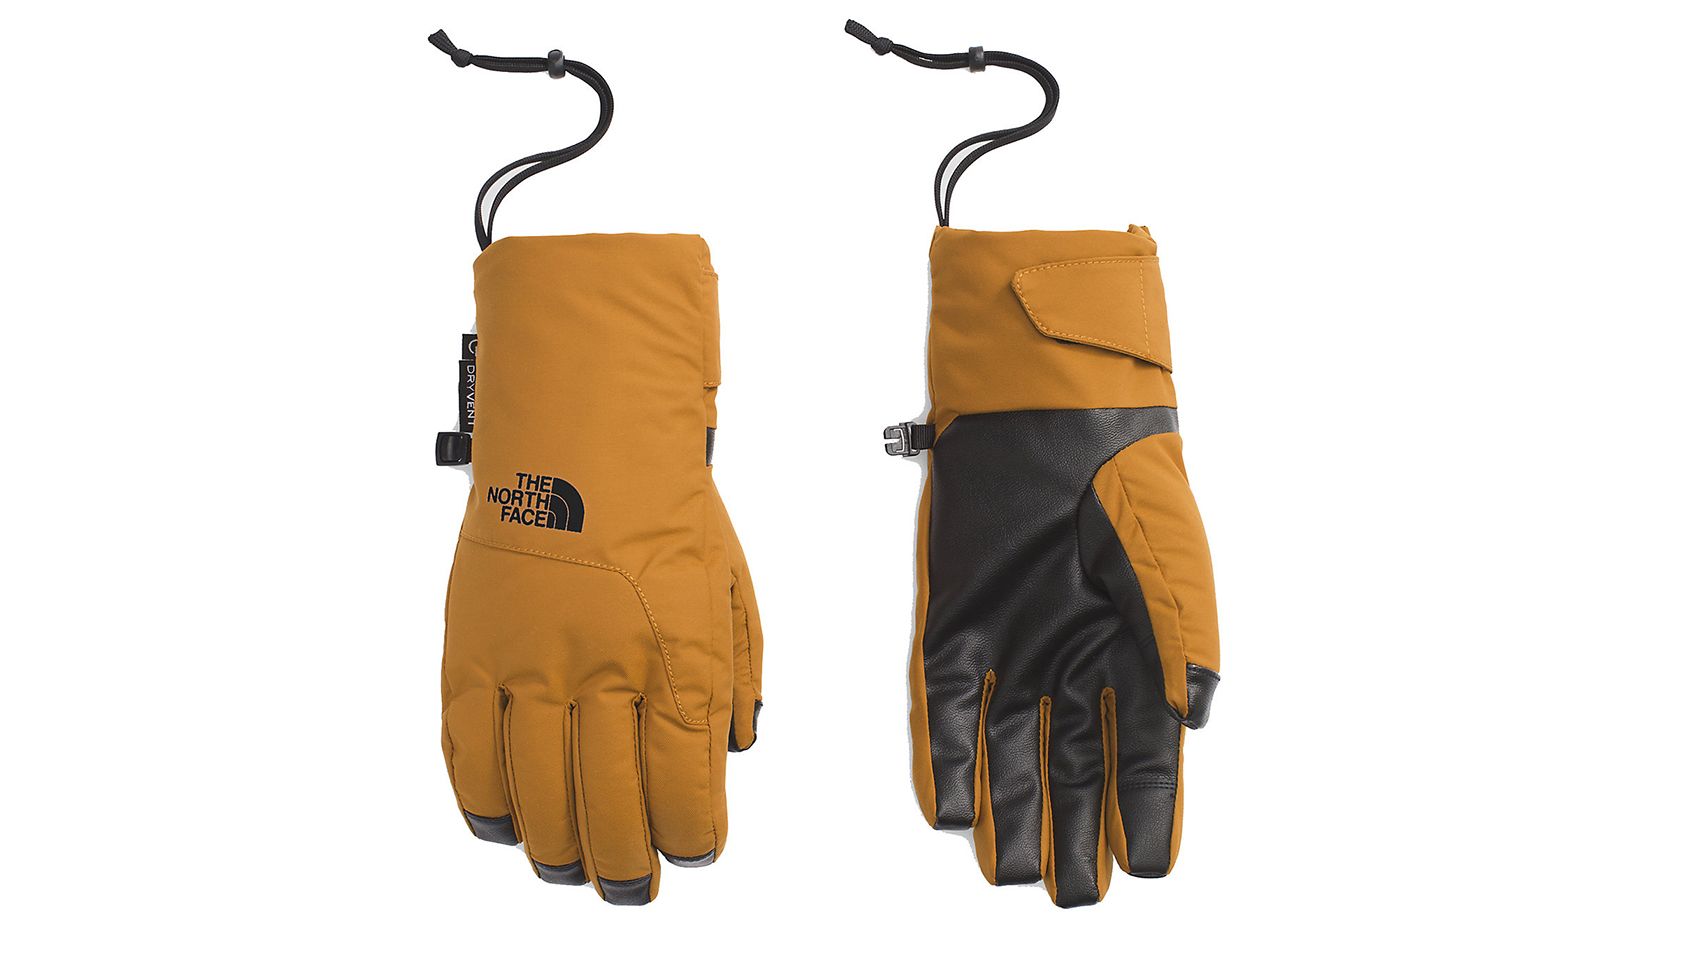 The best winter gloves | Underscored